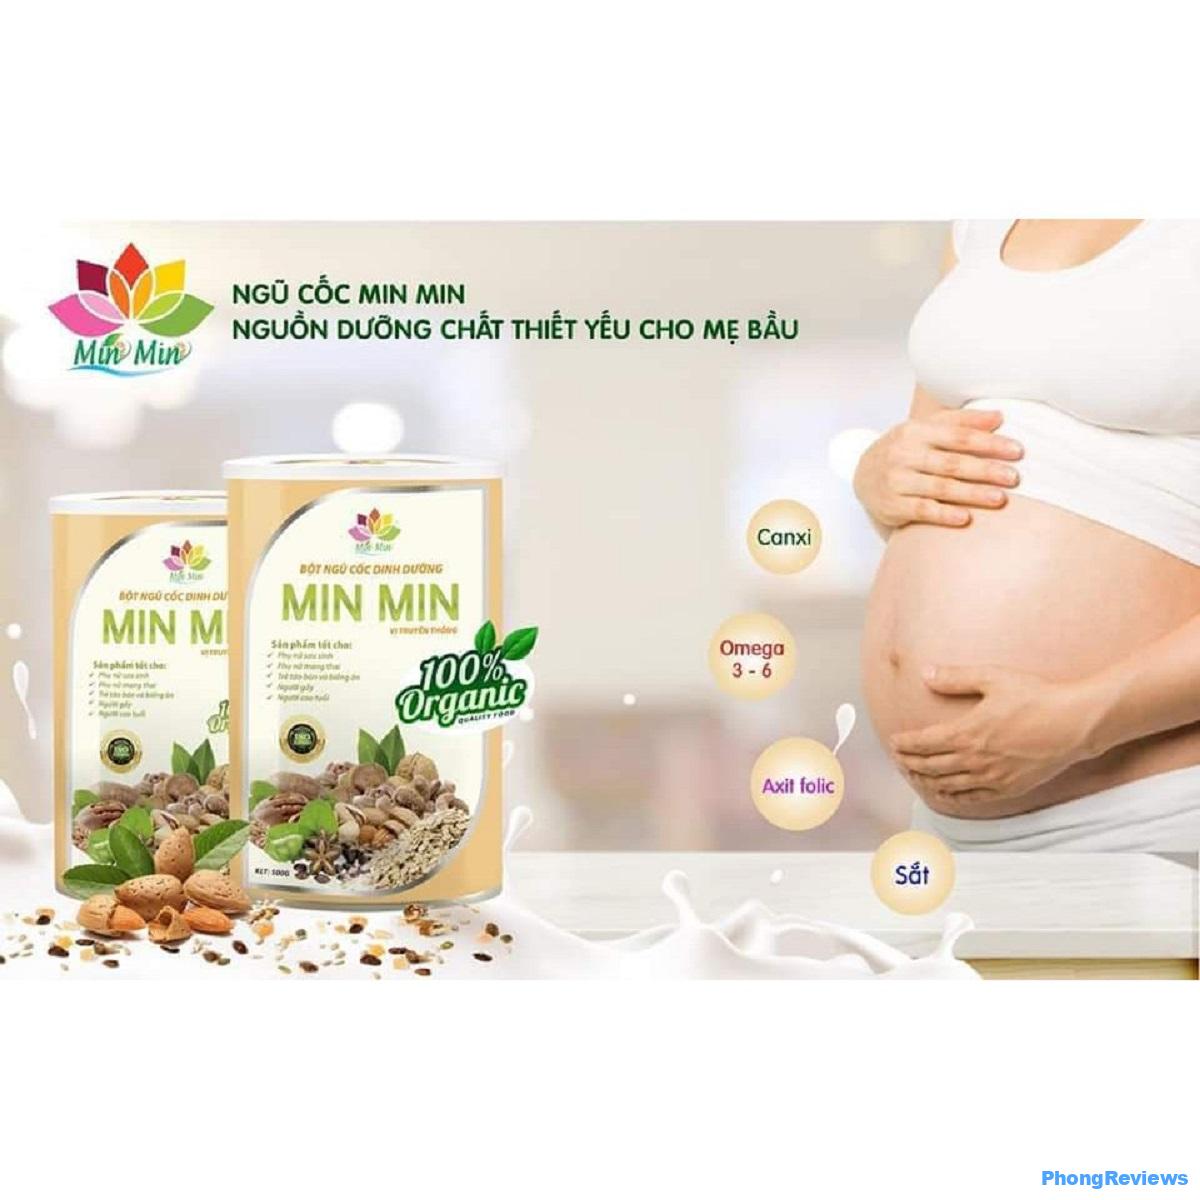 [Review]    Sữa hạt Mimi có tốt không?  bao nhiêu?